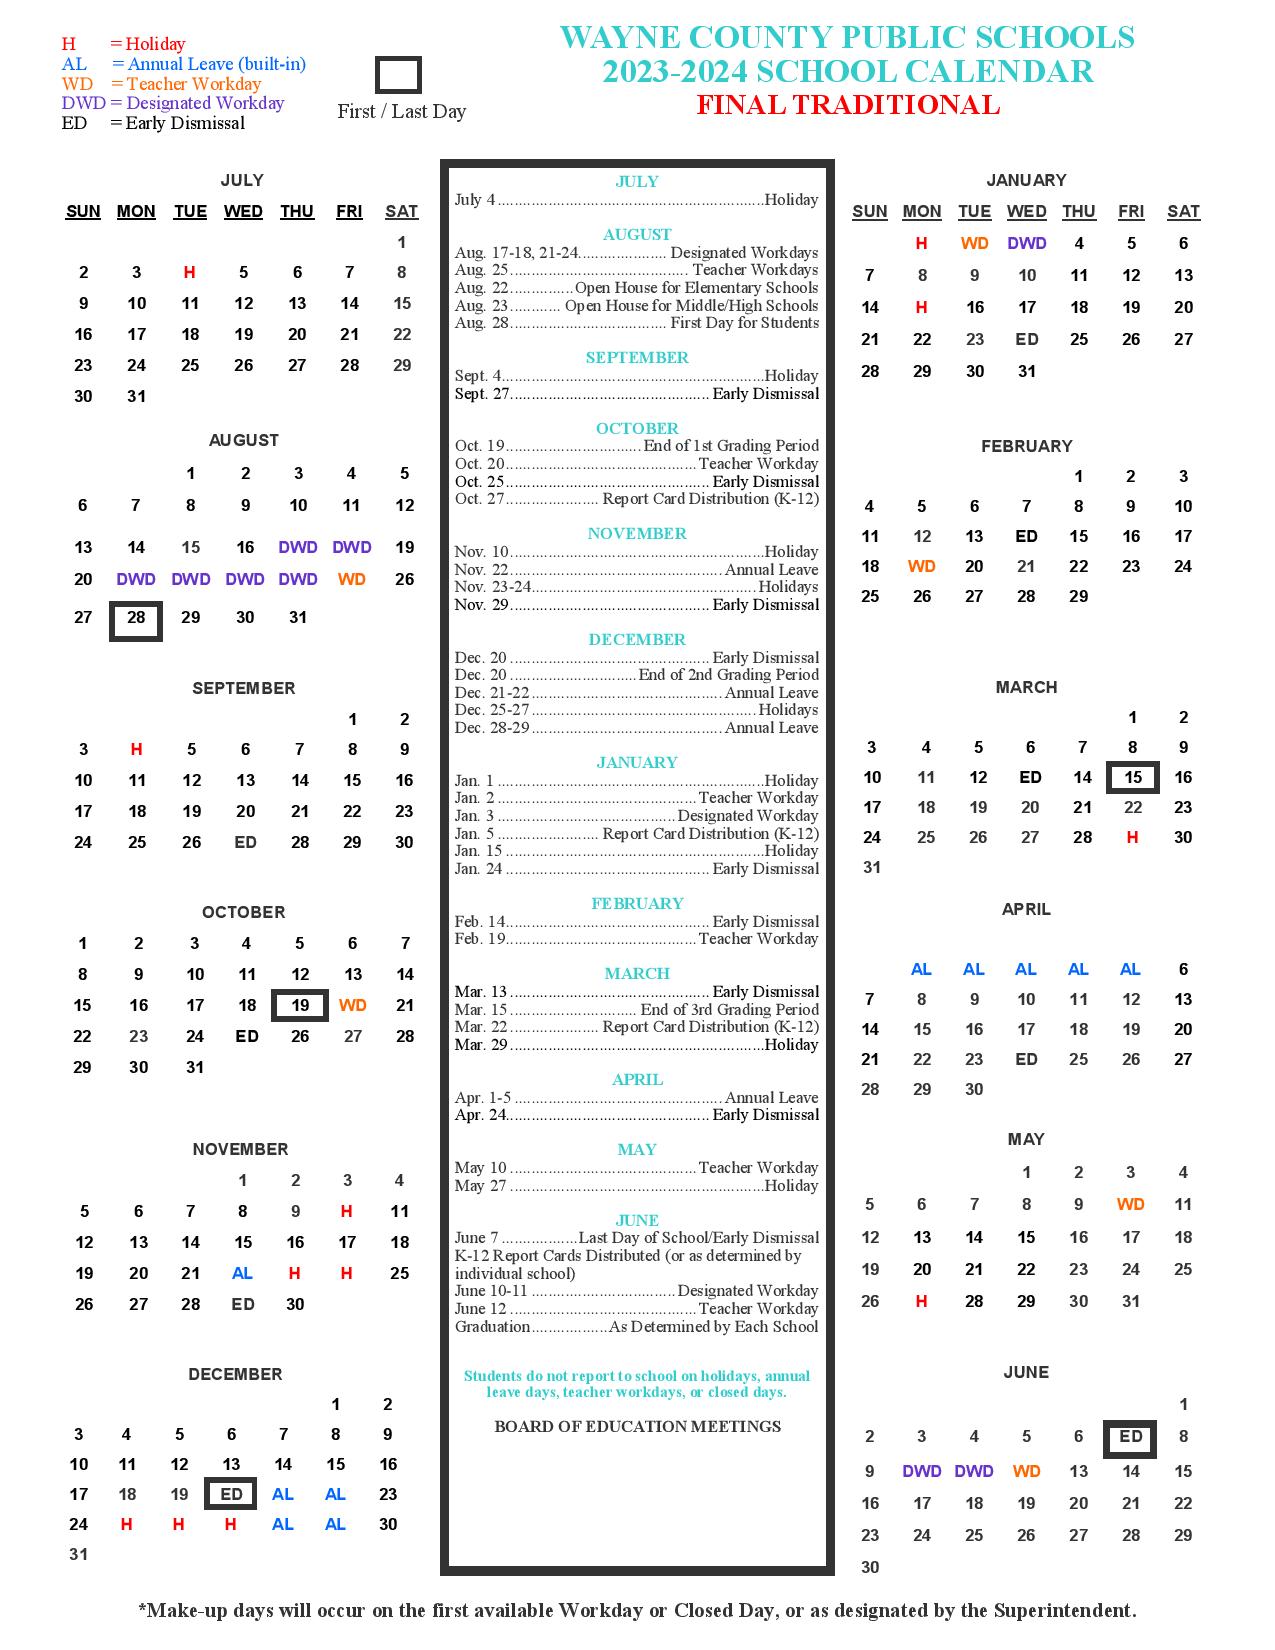 Wayne County Public Schools Calendar 20232024 in PDF